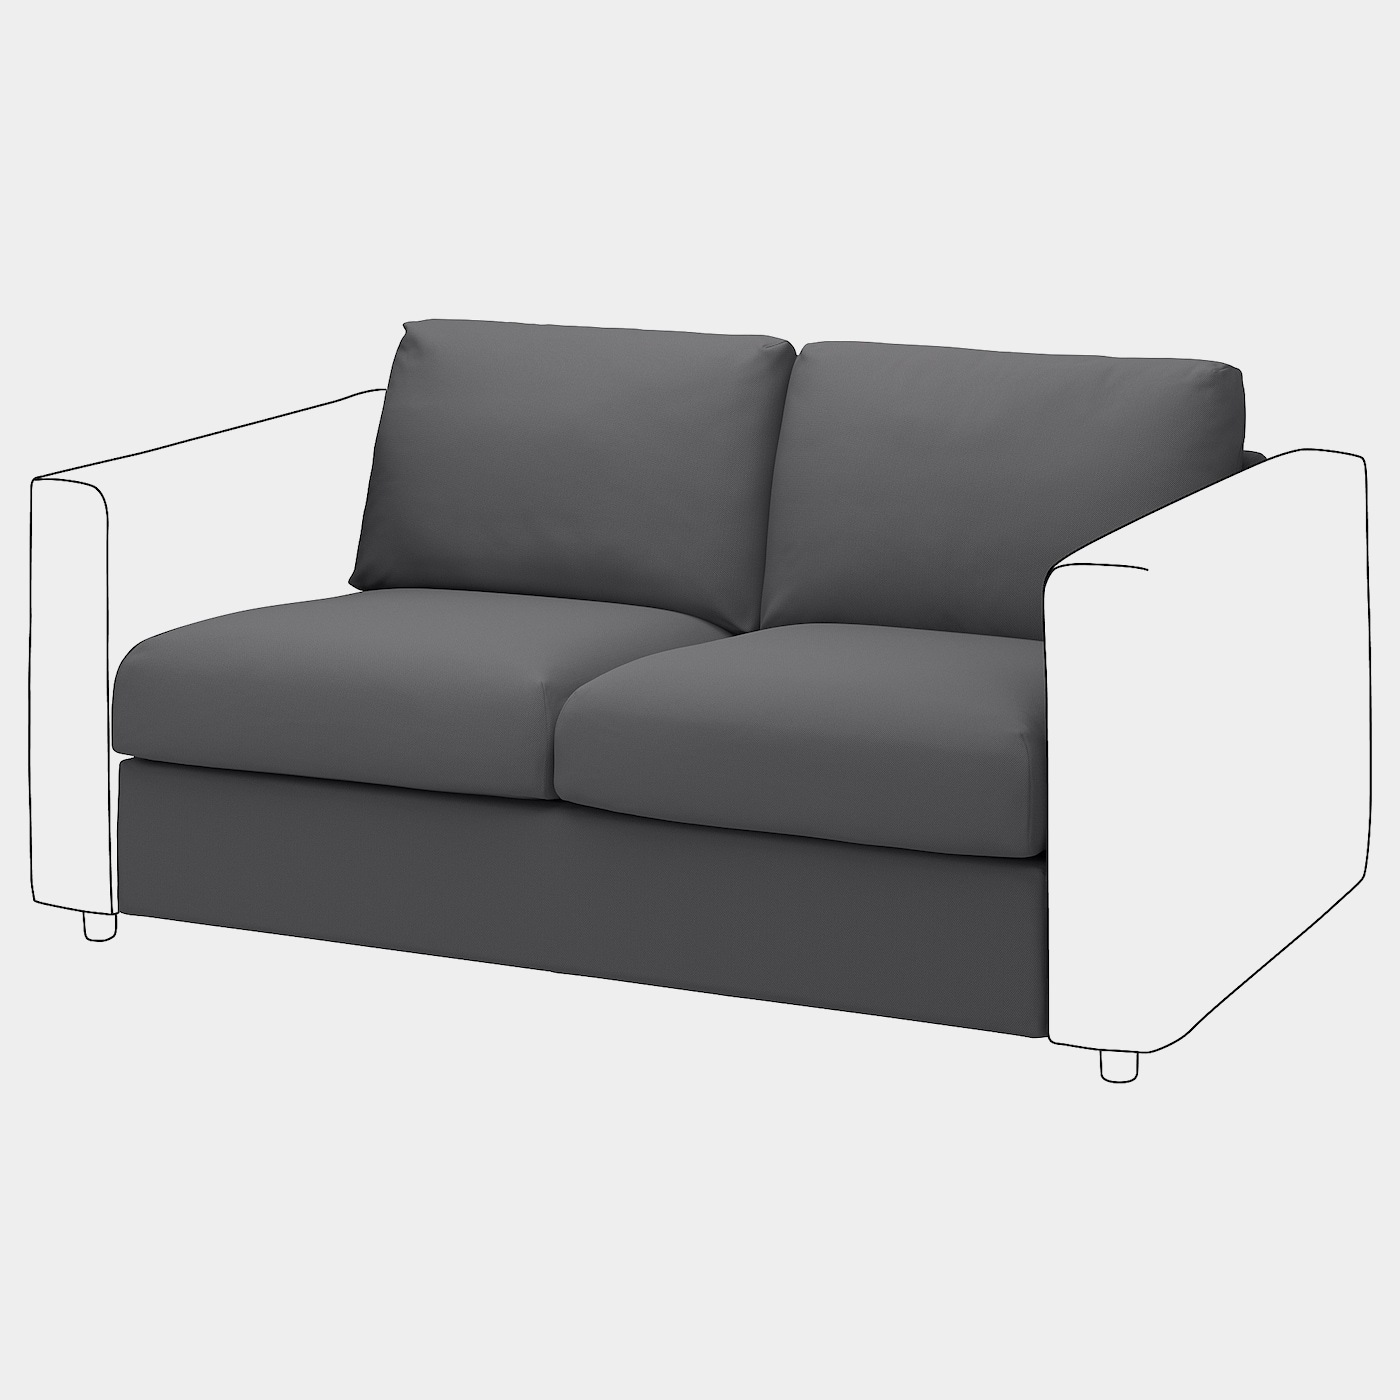 VIMLE Sitzelement 2  -  - Möbel Ideen für dein Zuhause von Home Trends. Möbel Trends von Social Media Influencer für dein Skandi Zuhause.